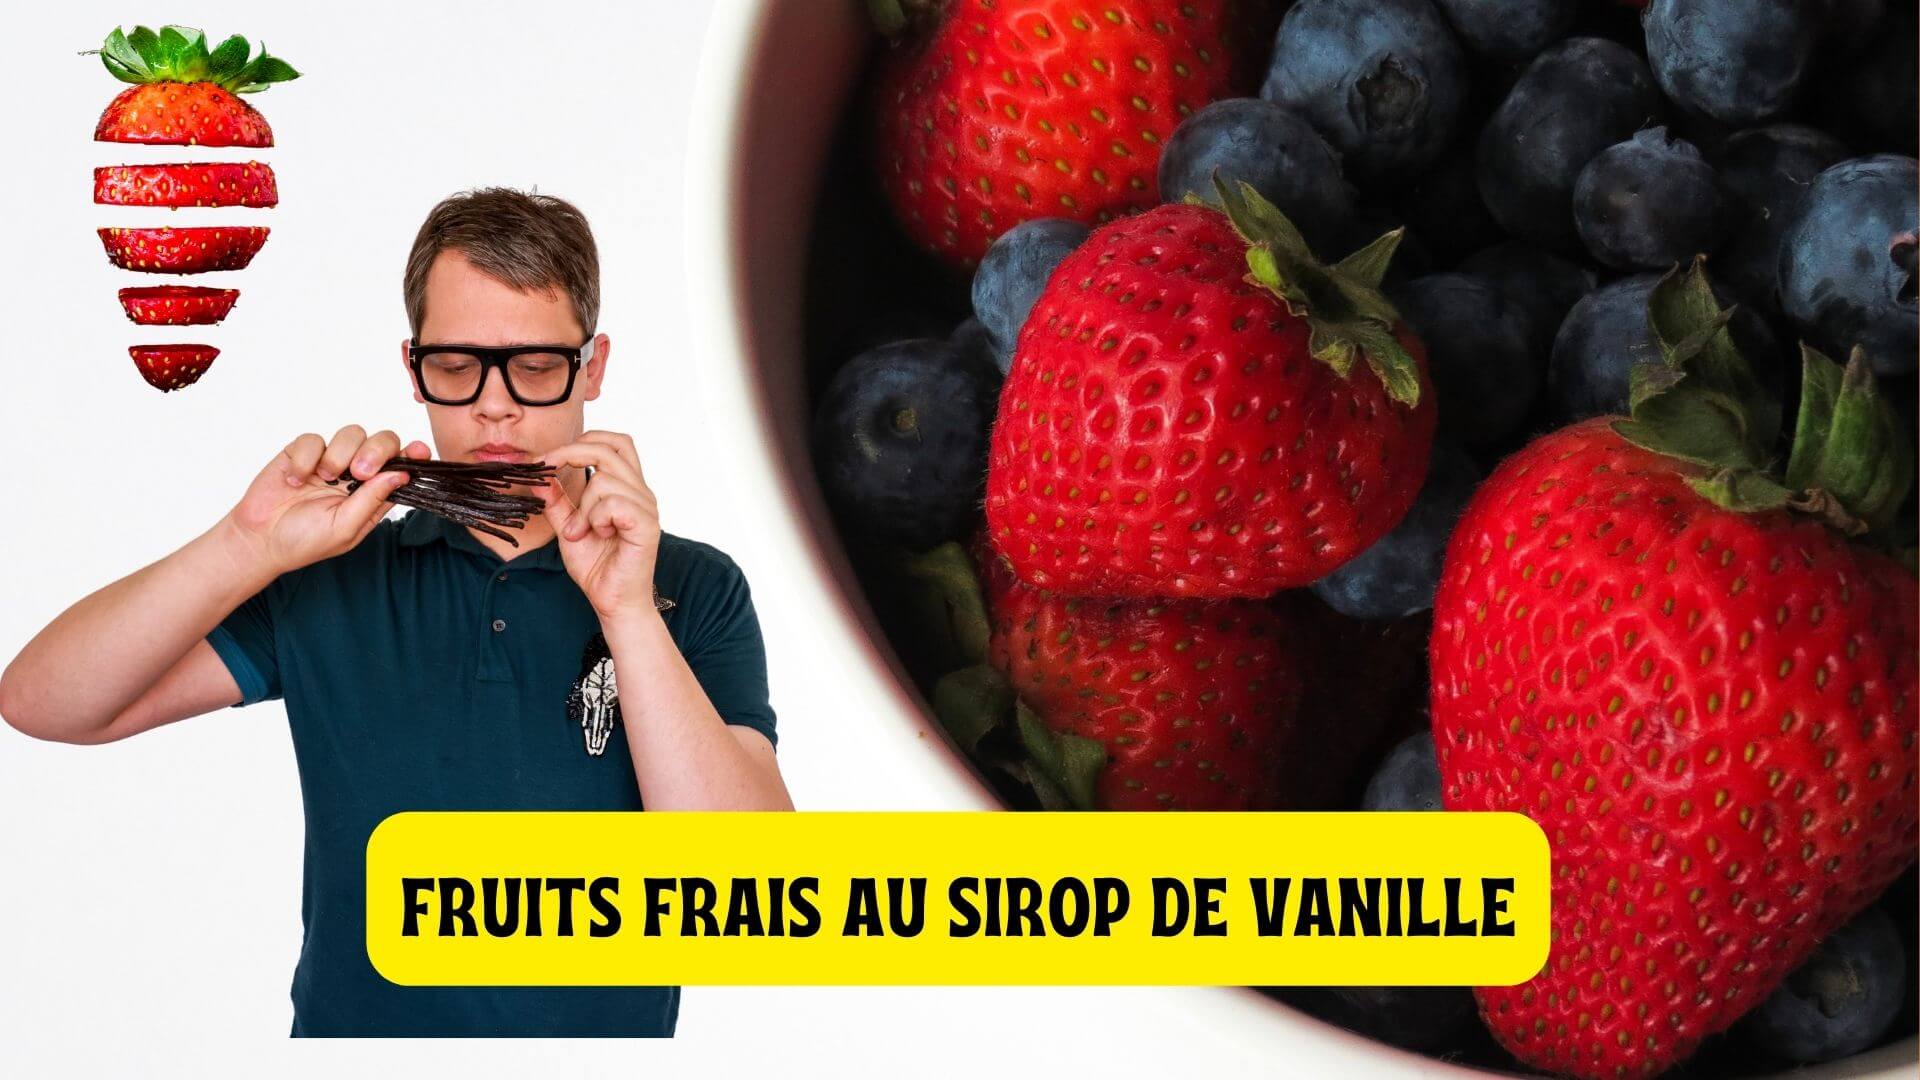 Fruits frais au sirop de vanille